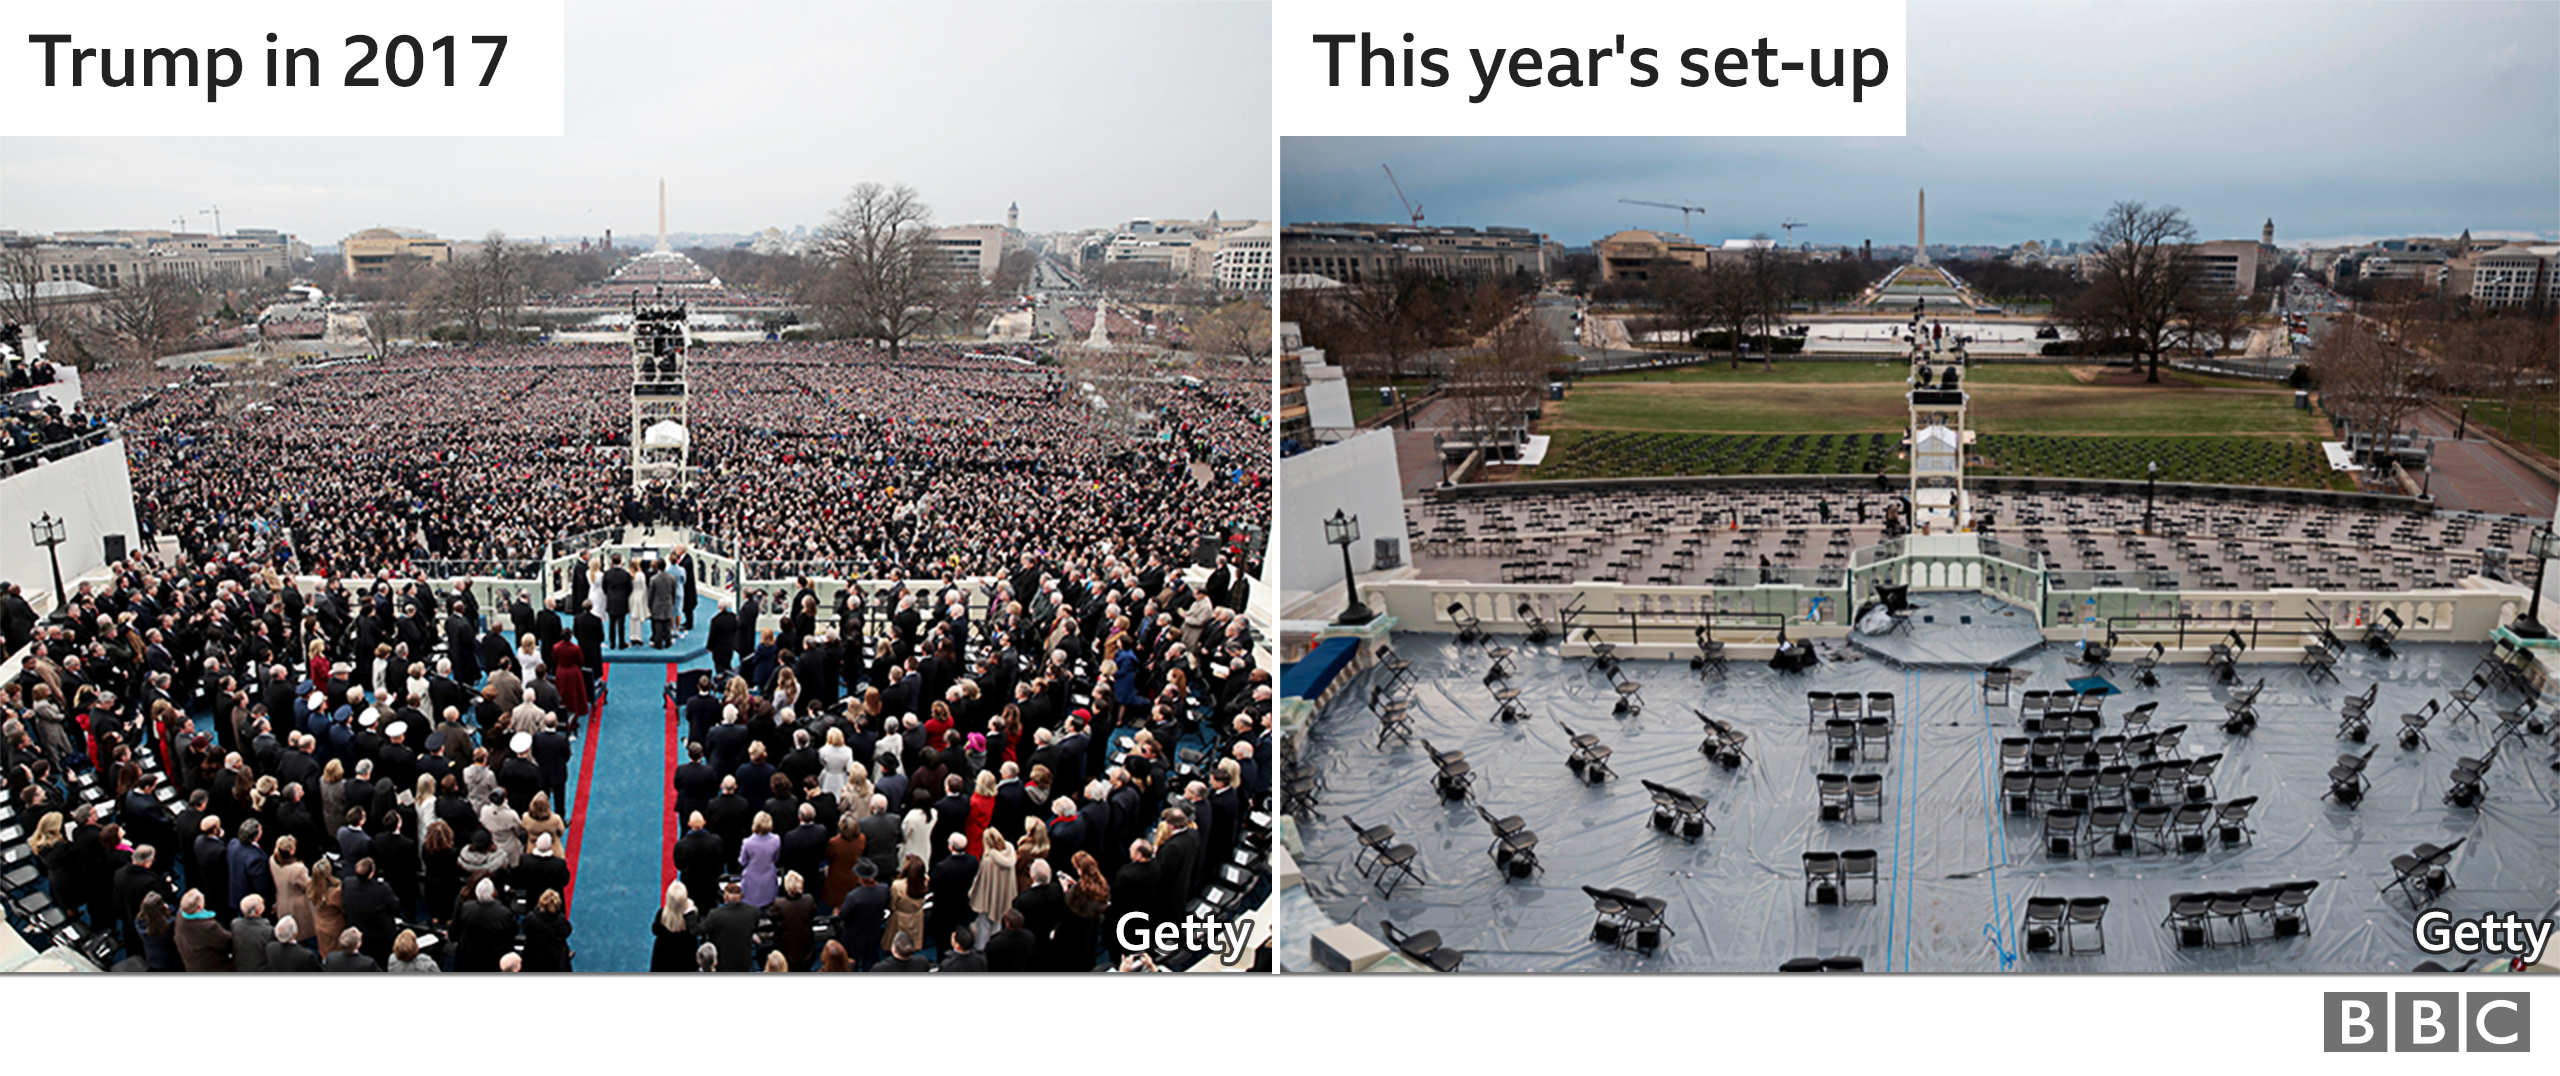 Графика, сравнивающая заполненную сцену на инаугурации президента Трампа в 2017 году с скудной обстановкой на церемонии Джо Байдена